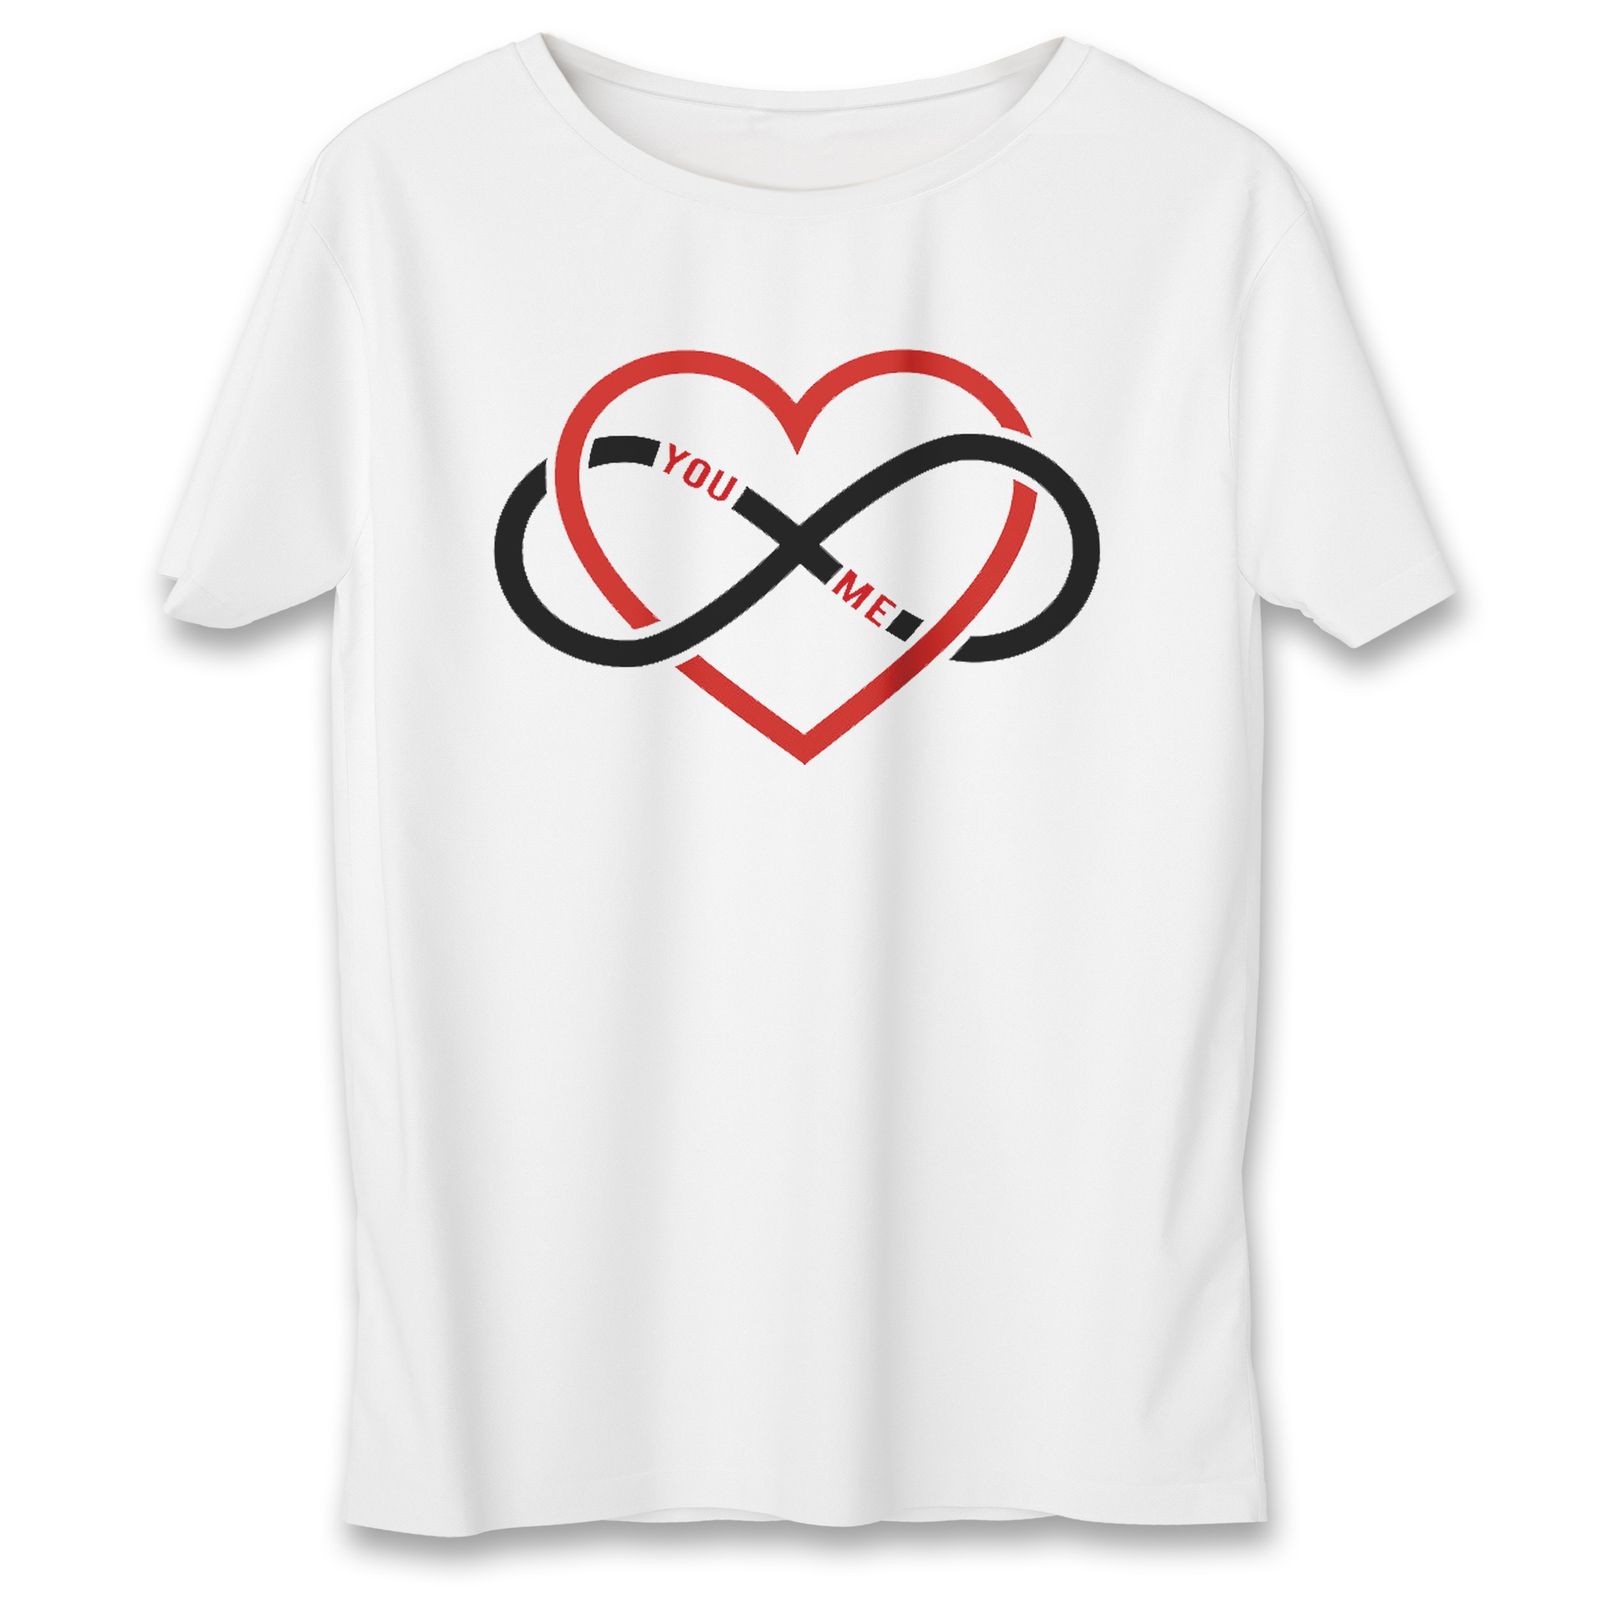 تی شرت زنانه به رسم قلب بی نهایت کد 576 -  - 1